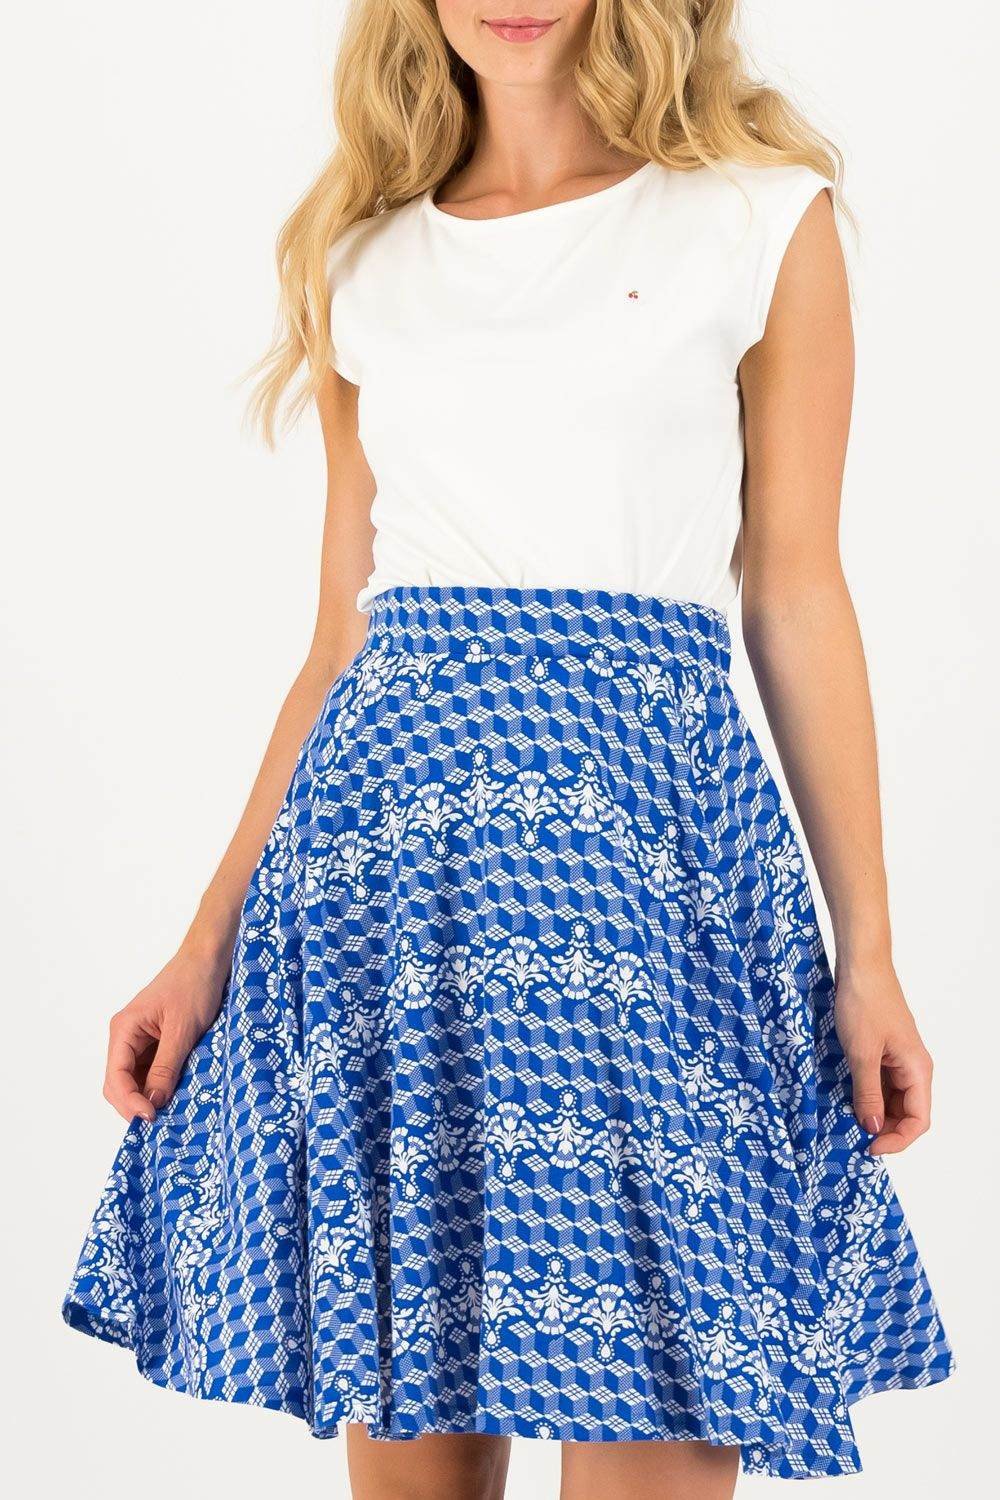 Fotografie Blutsgeschwister modrá sukně Fullmoon Circle Skirt Dutch Delft